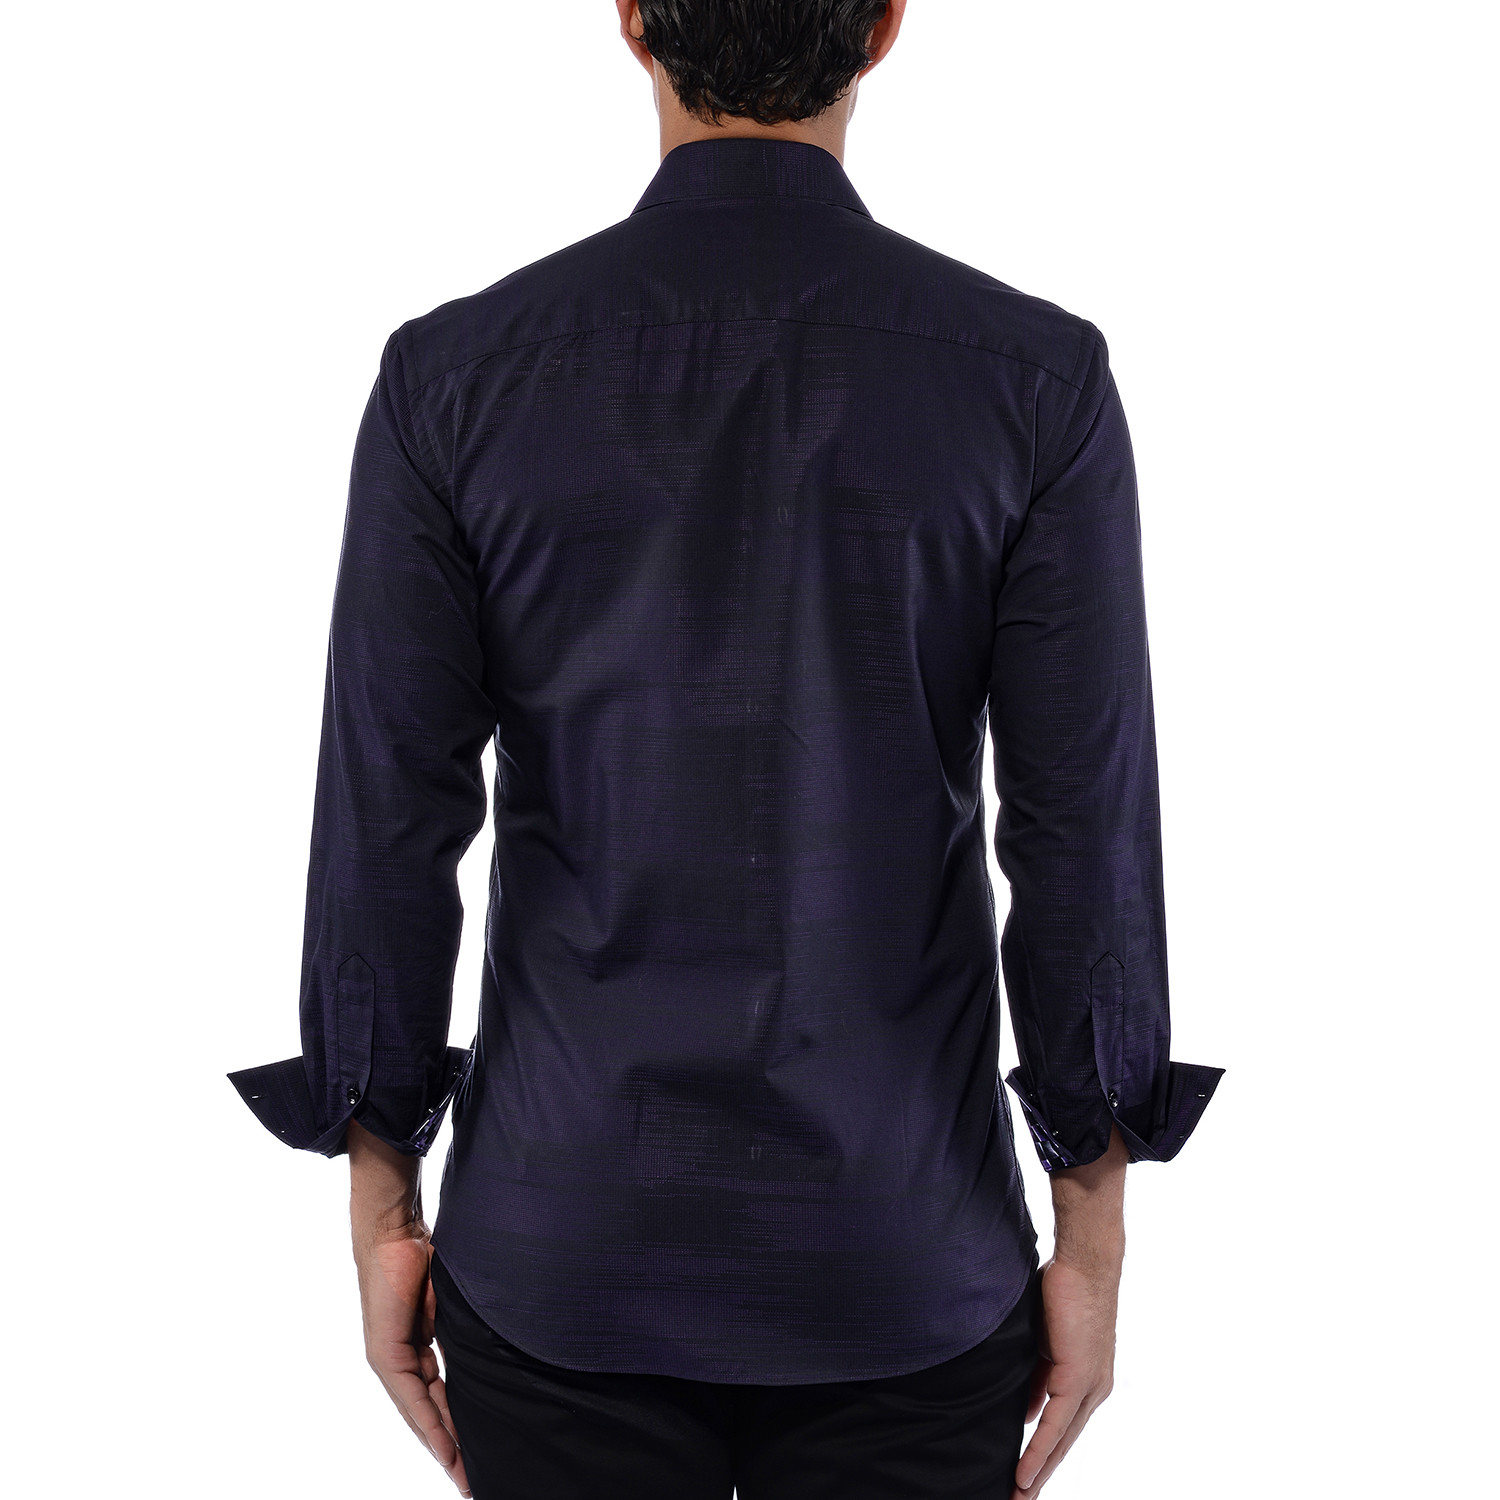 Jacquard Threaded Design Long Sleeve Shirt // Black (S) - Bertigo ...